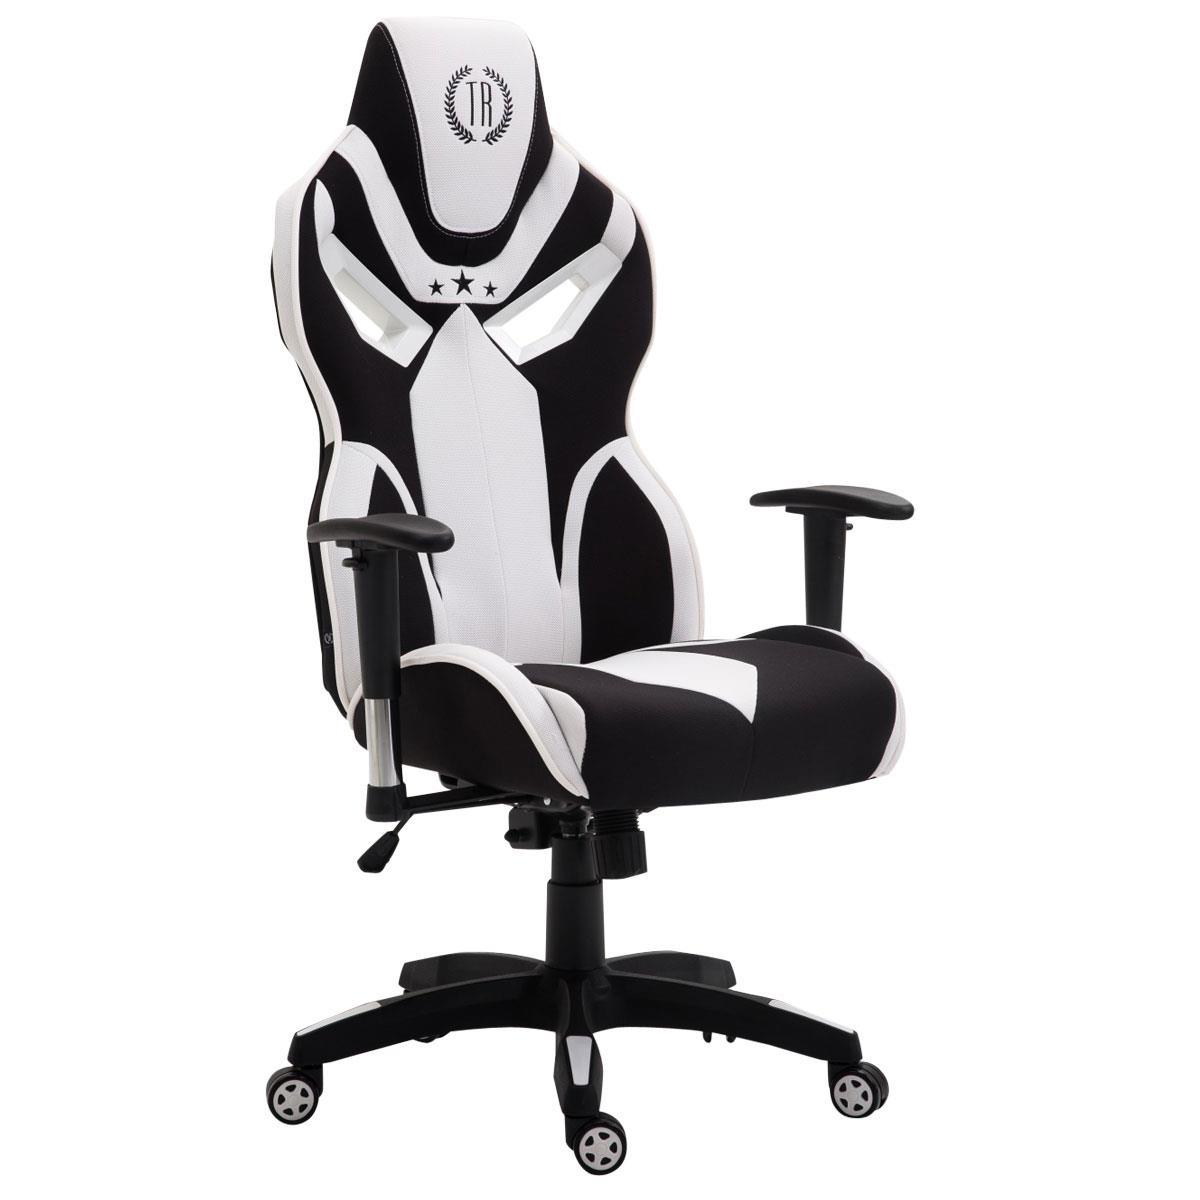 Chaise de bureau HAMIL, design ergonomique, en tissu, Noir / blanc